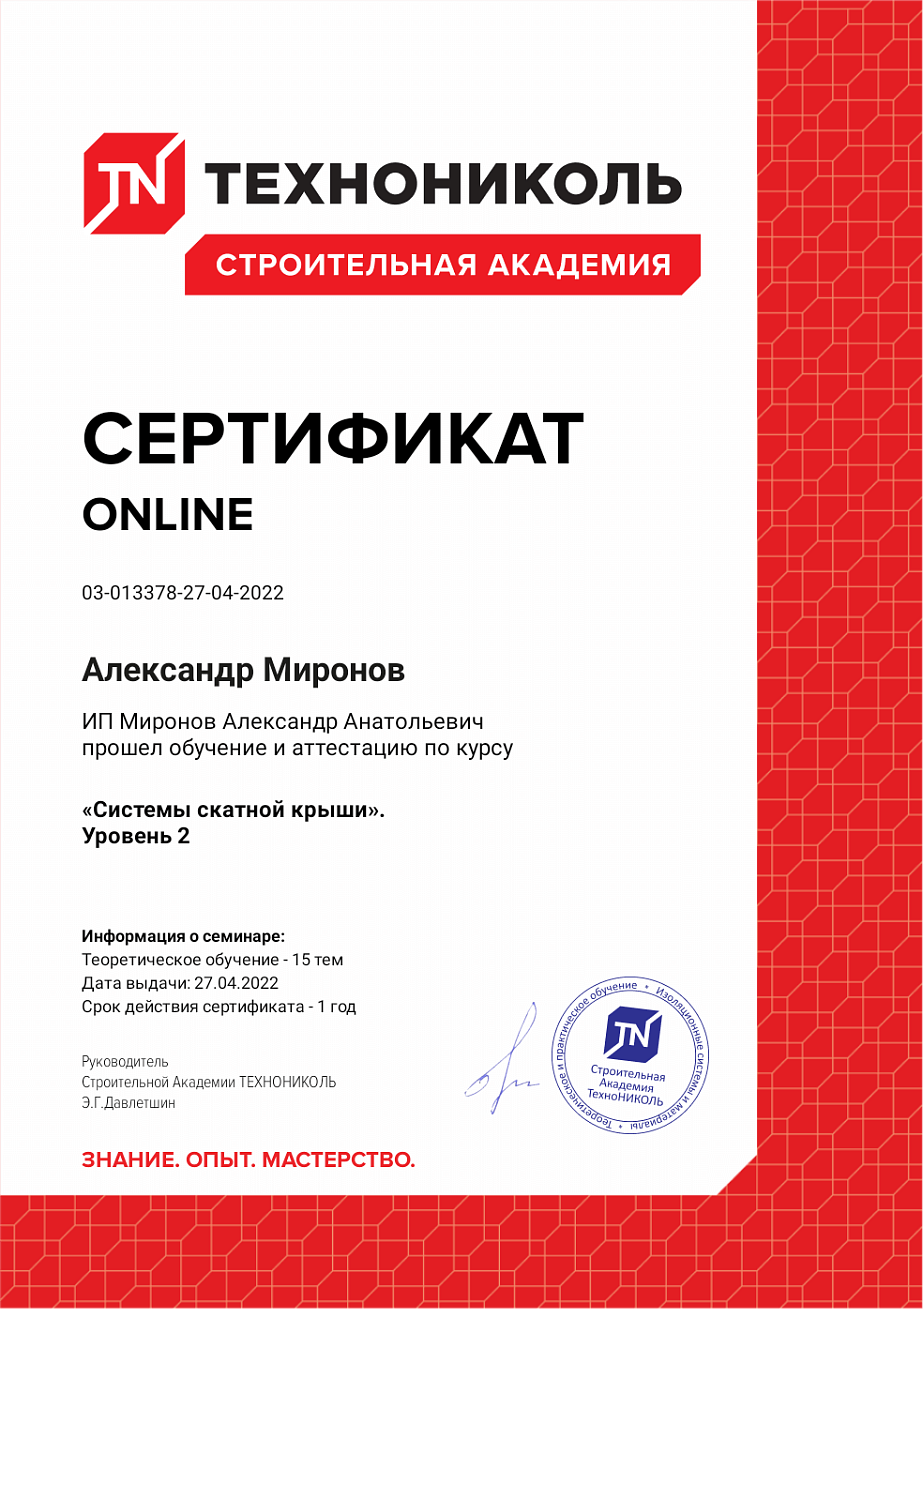 Сертификат об успешном прохождении онлайн-курса по скатным крышам